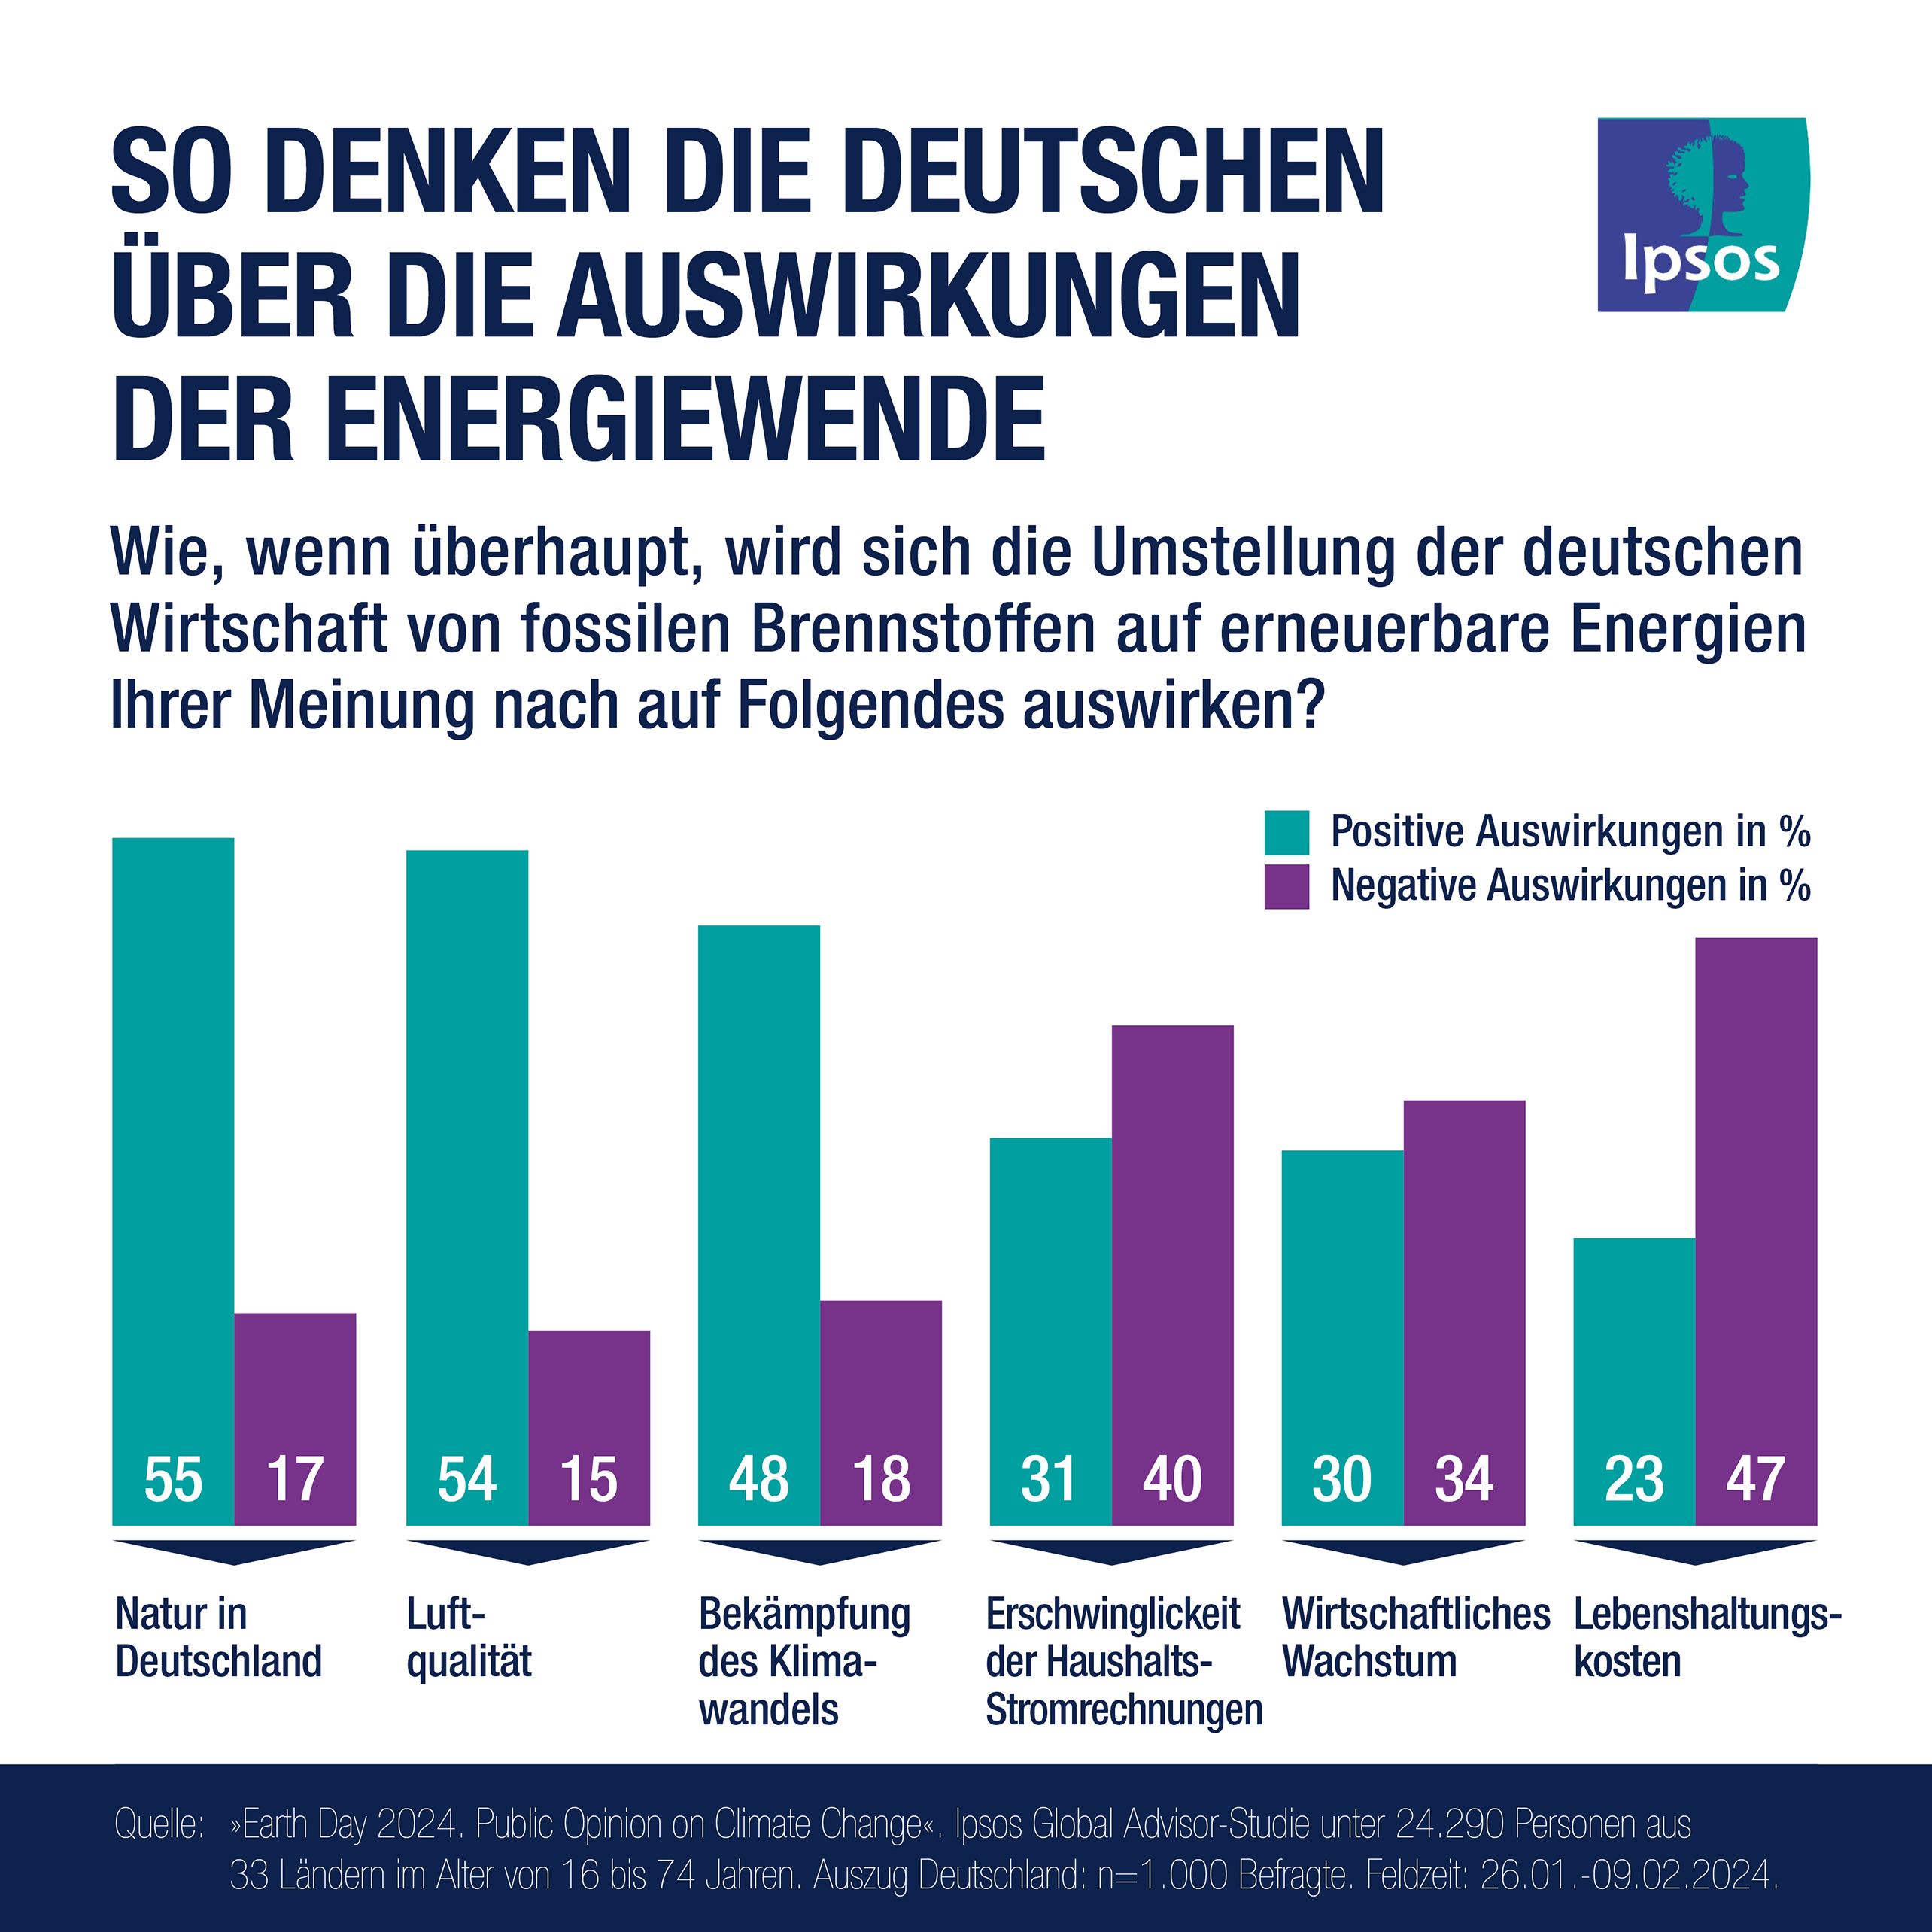 Earth Day 2024: So denken die Deutschen über die Auswirkungen der Energiewende